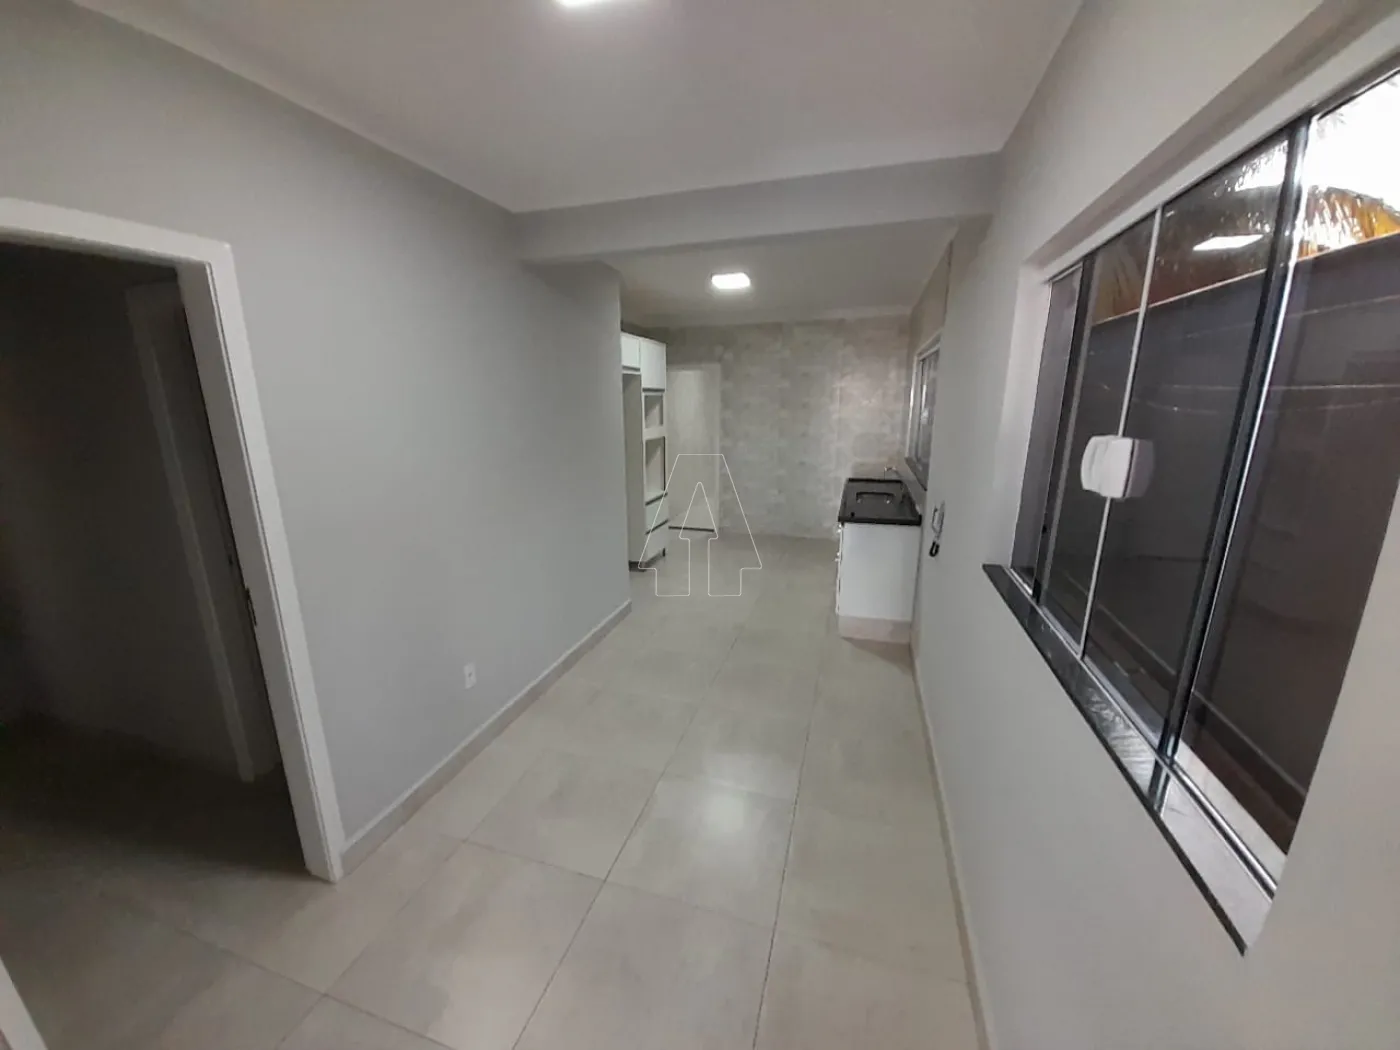 Alugar Casa / Residencial em Araçatuba R$ 3.000,00 - Foto 4